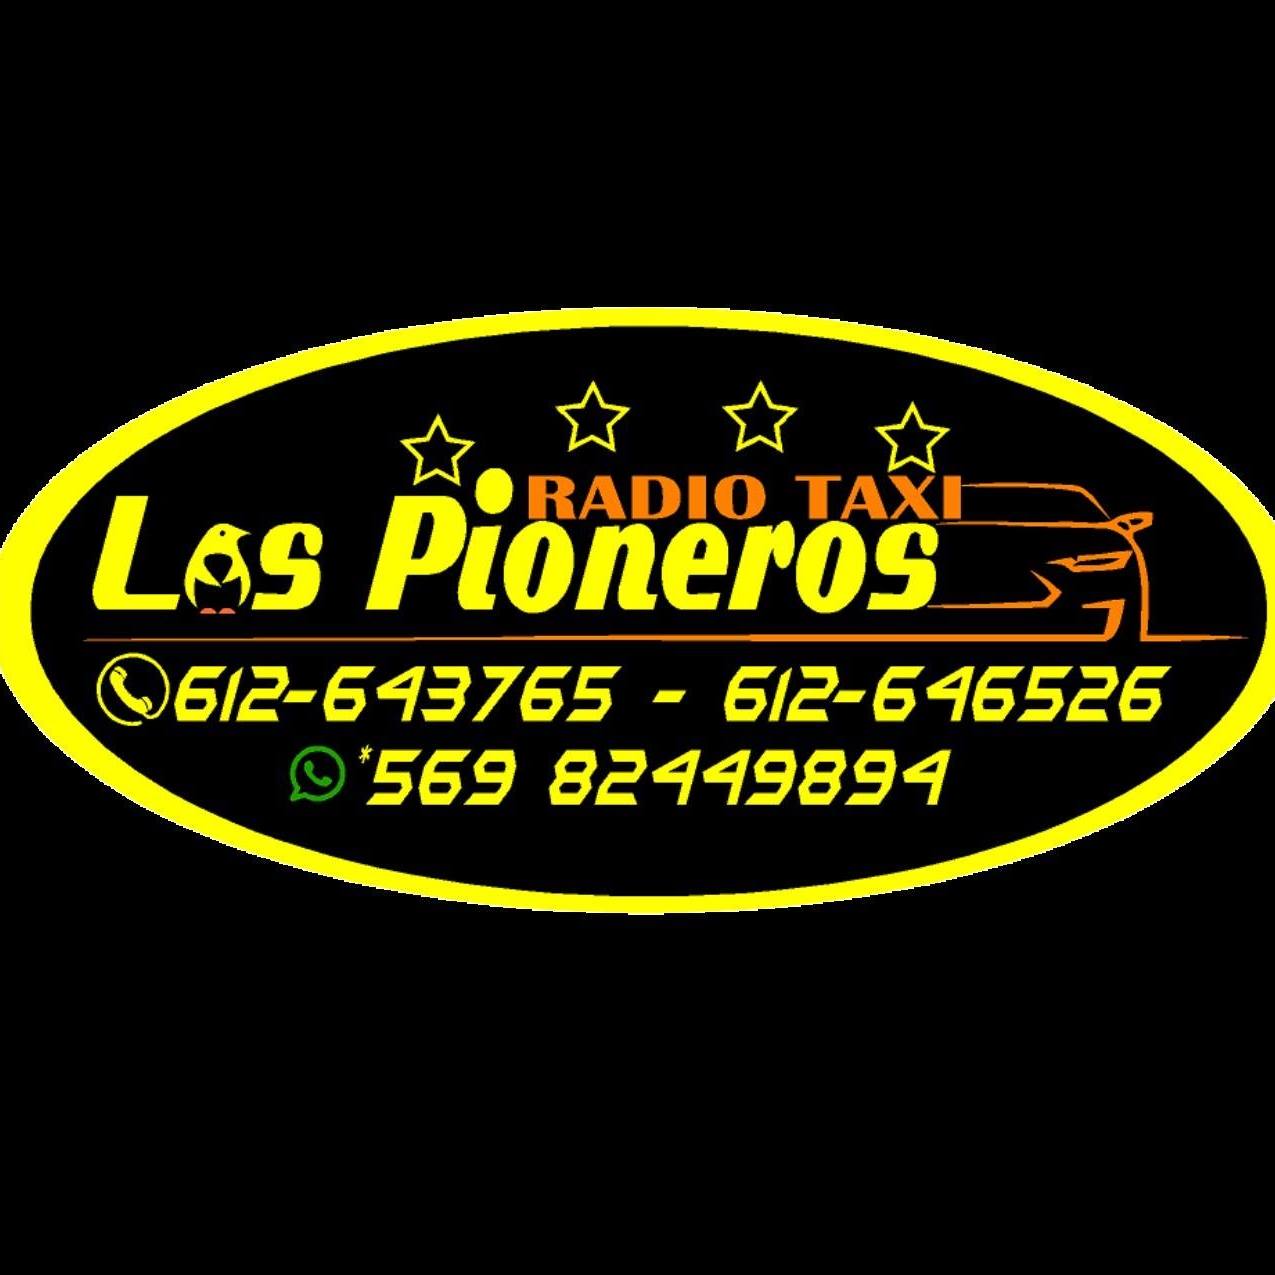 Radio Taxi Los Pioneros - Punta Arenas